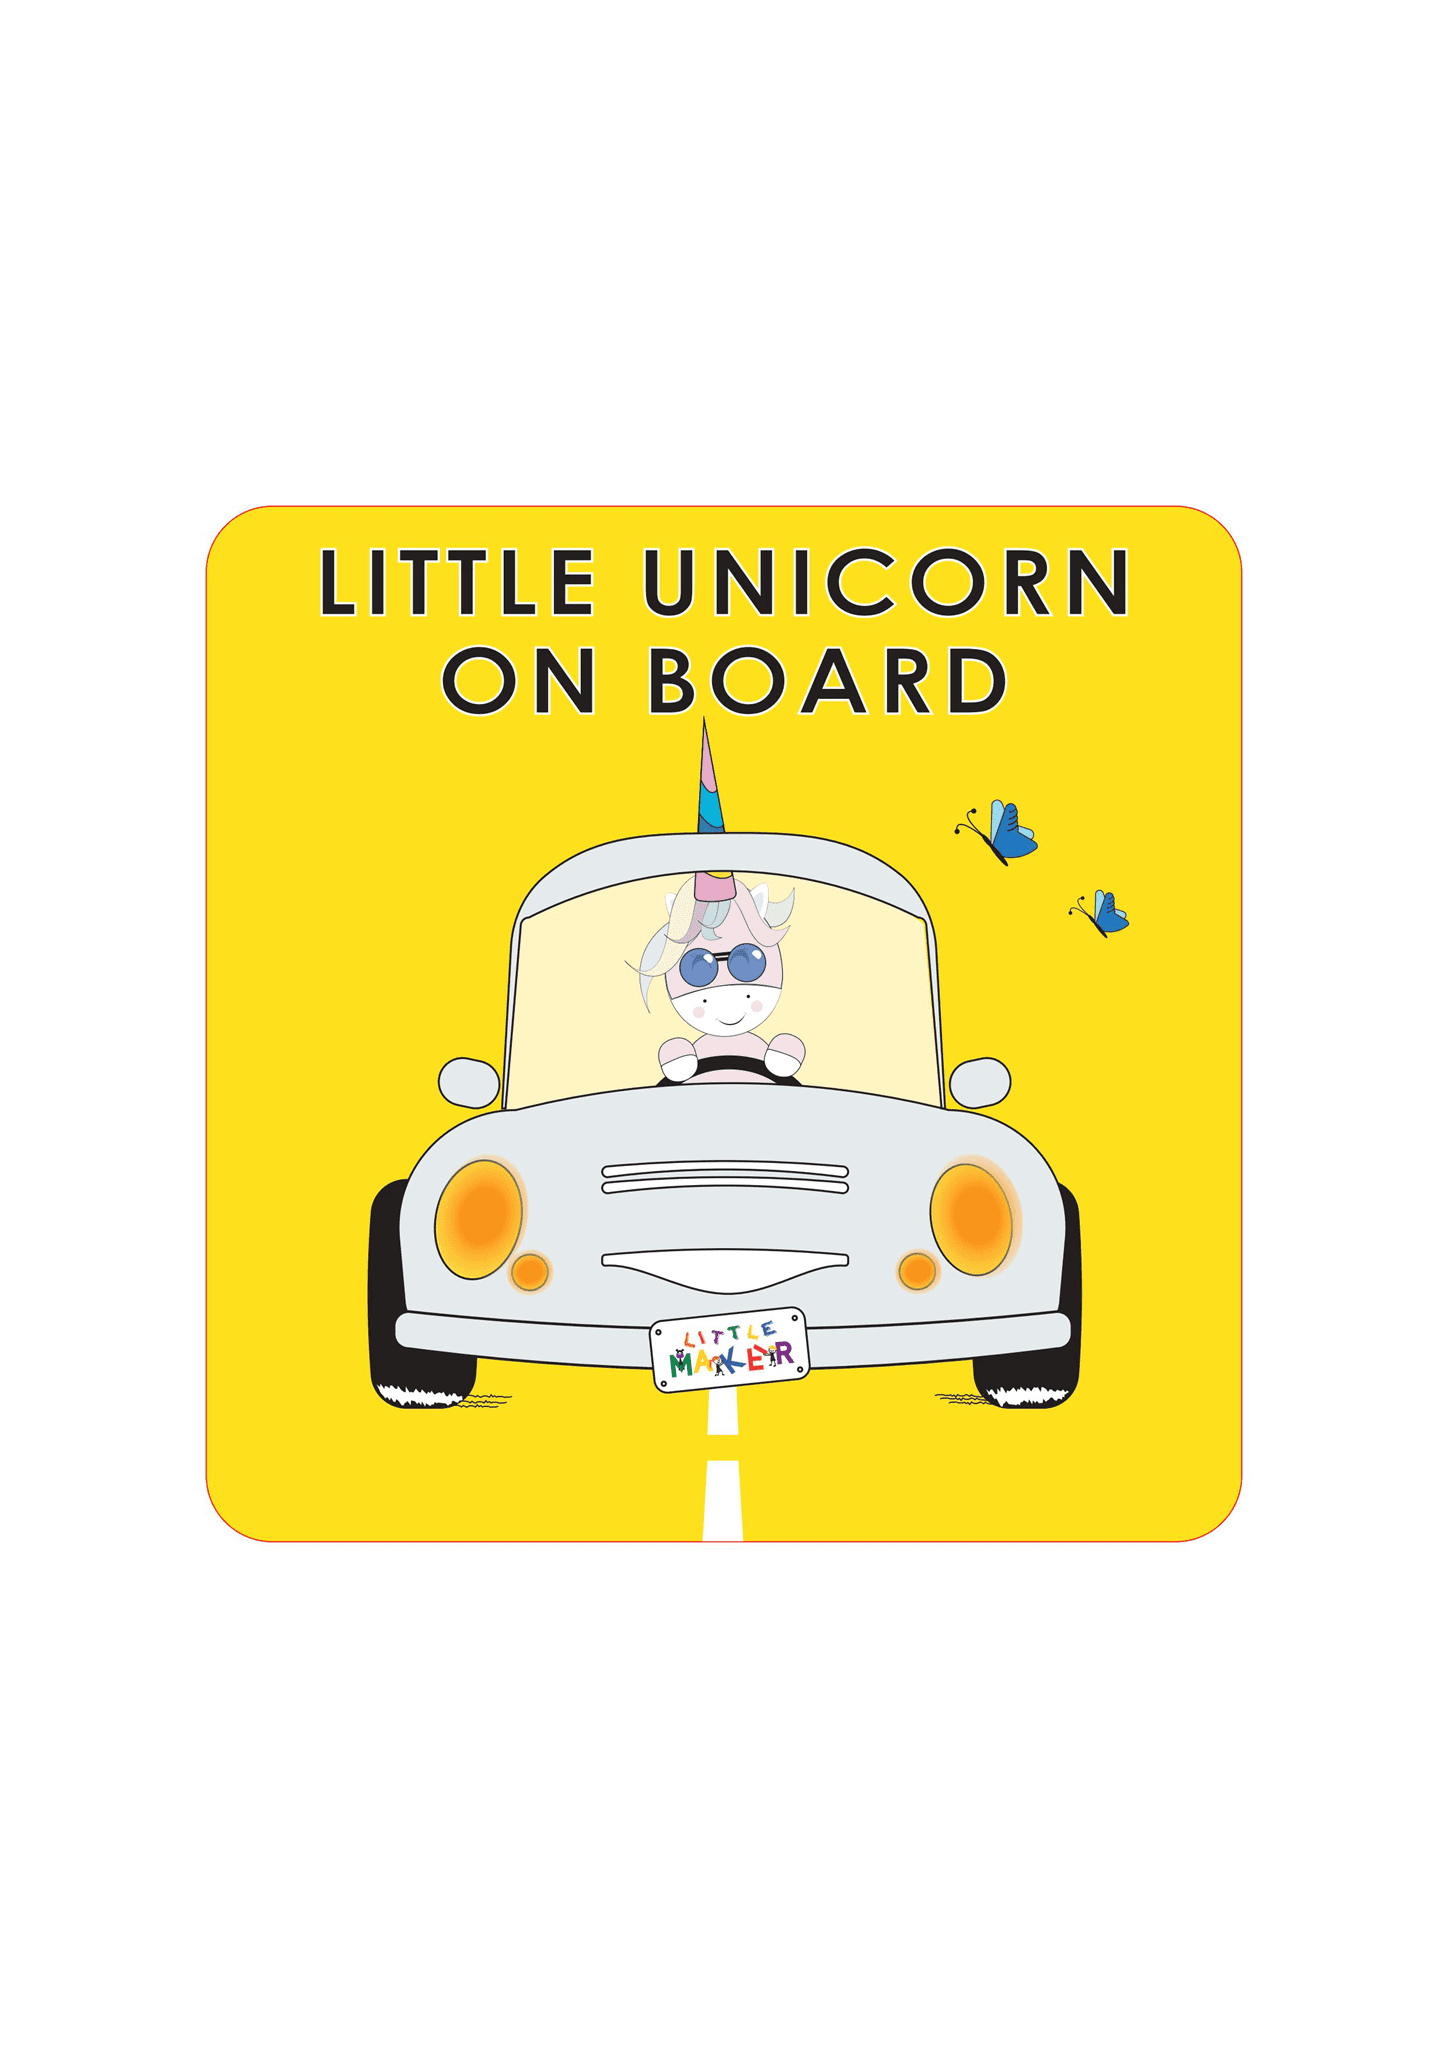 Little Maker Gift Boxes - Unicorn 2 resmi